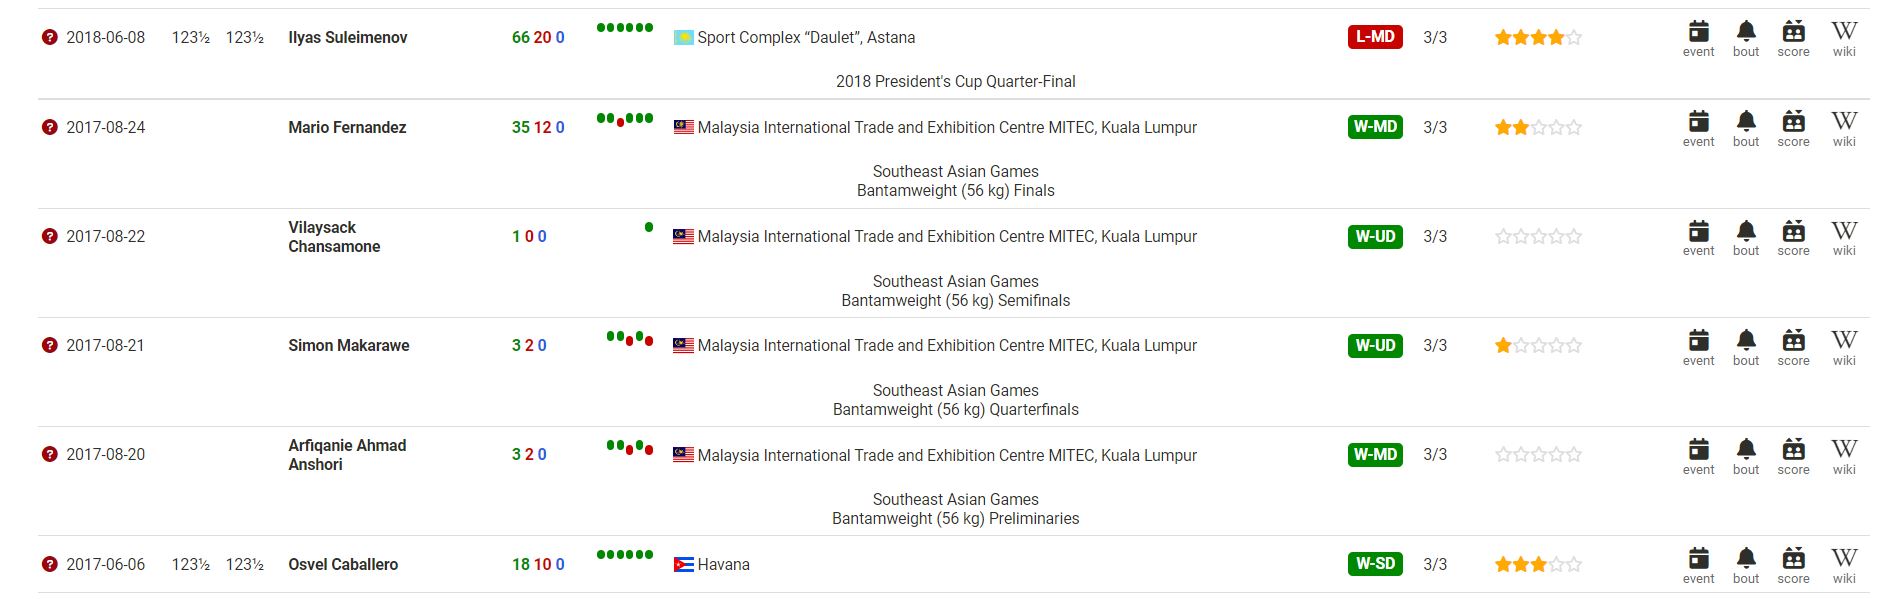 Các trận đấu Boxing SEA Games 31 không được ghi nhận kết quả trên BoxRec - Ảnh 3